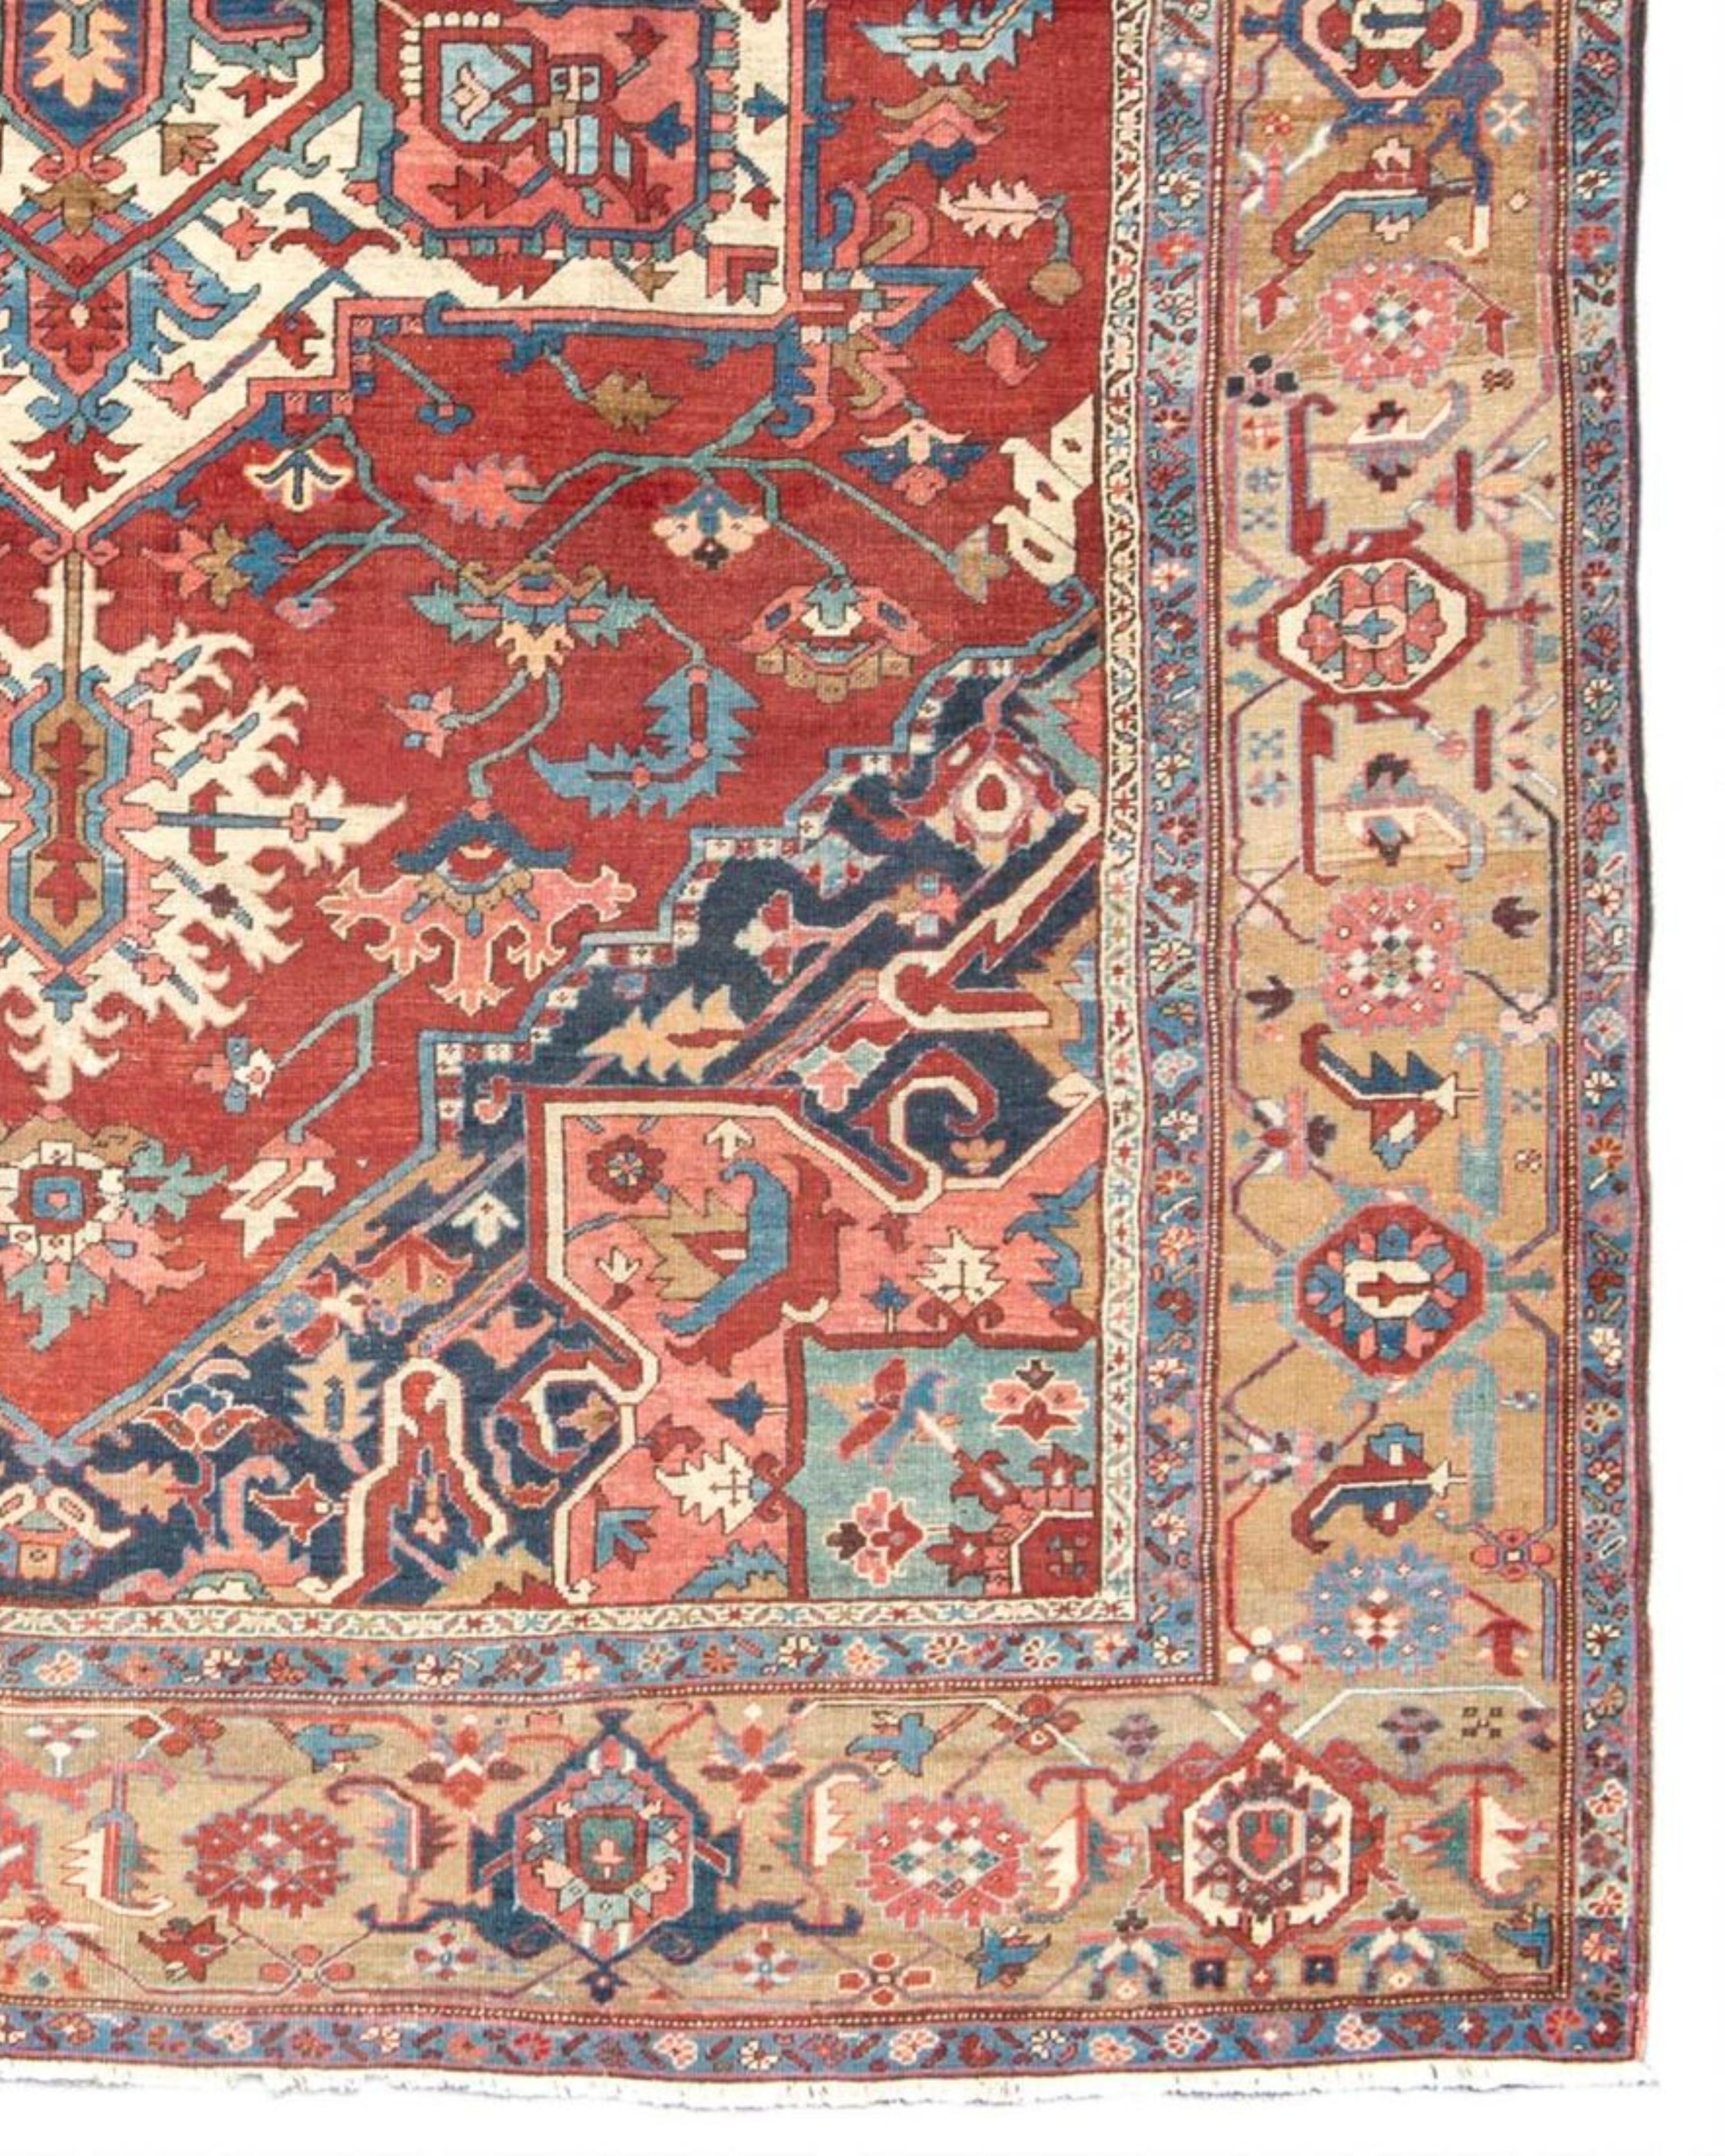 Ancien grand tapis persan Serapi, c. 1900

Les tapis Serapi ont été tissés dans le district de Heriz, dans le nord-ouest de la Perse, à partir du milieu du XIXe siècle, en réponse à une forte augmentation de la demande internationale de tapis.